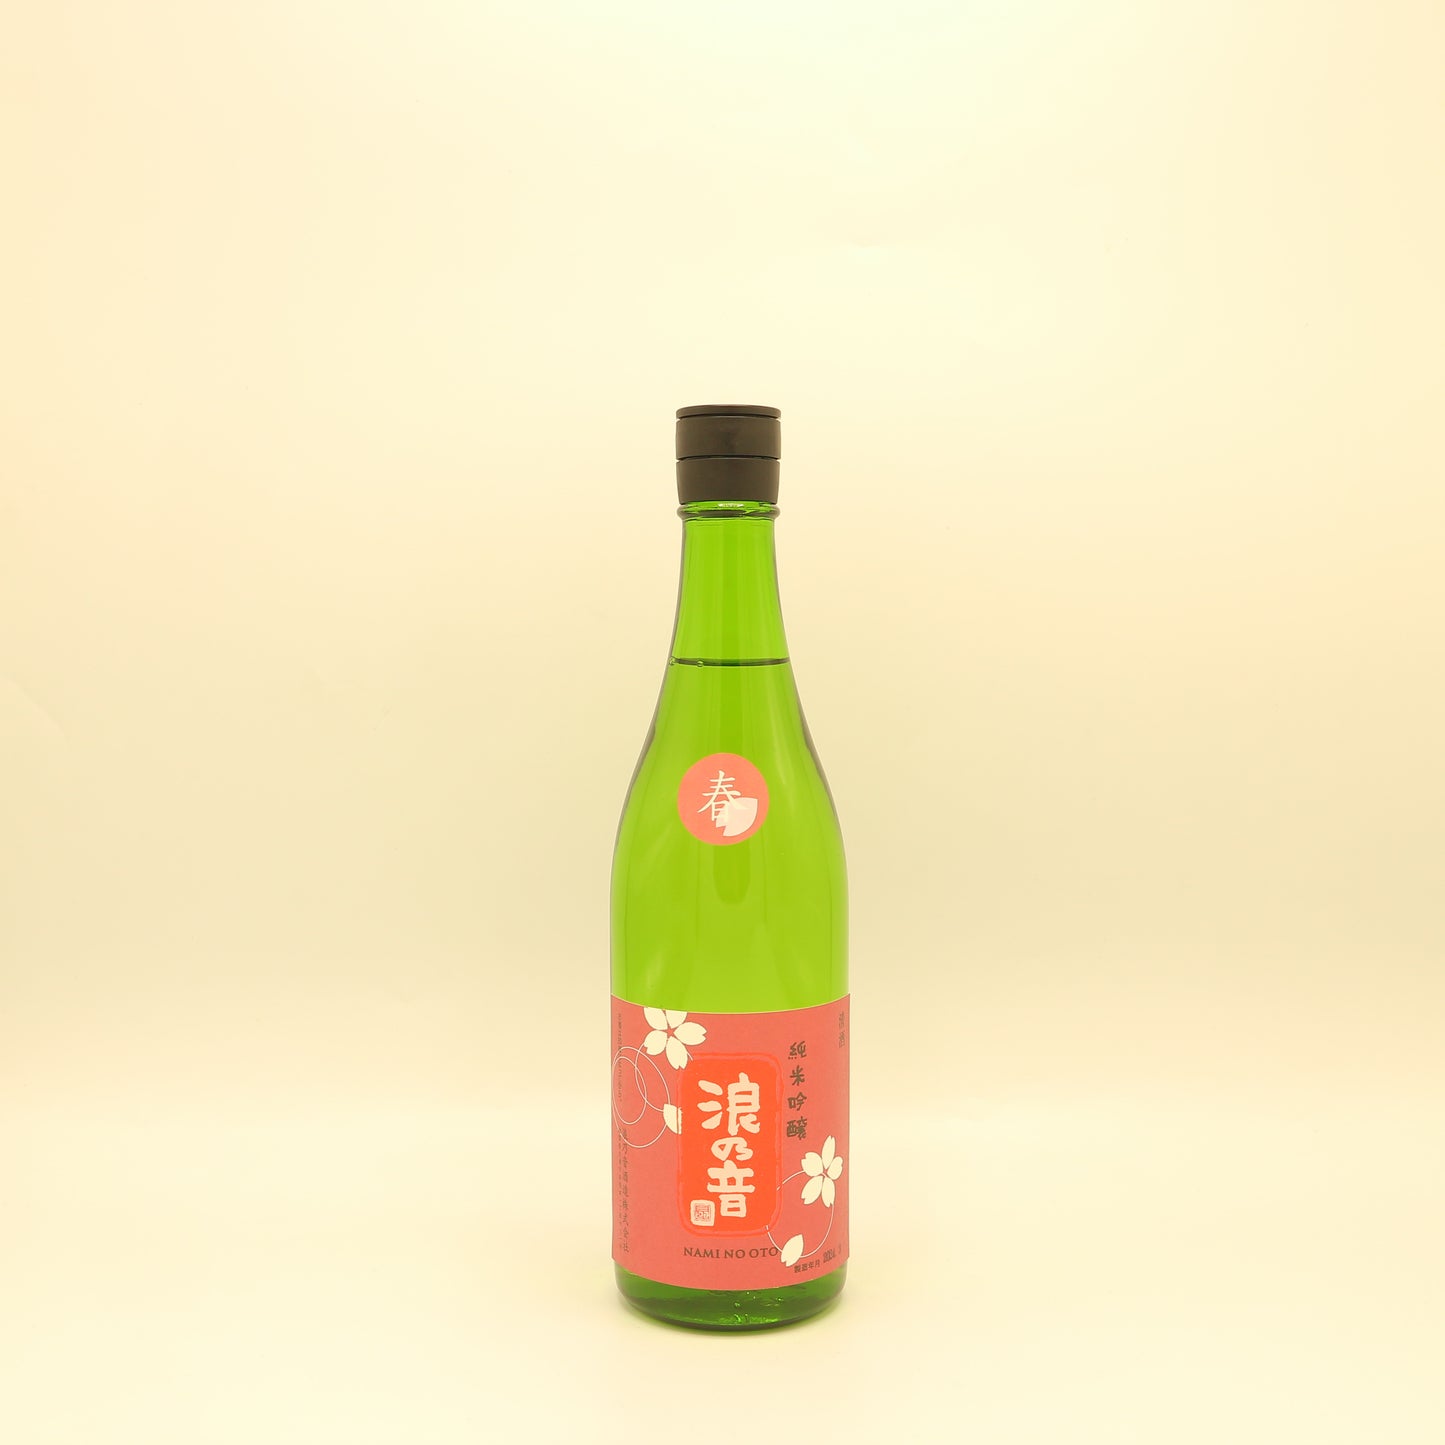 浪乃音 純米吟醸生酒「桜」